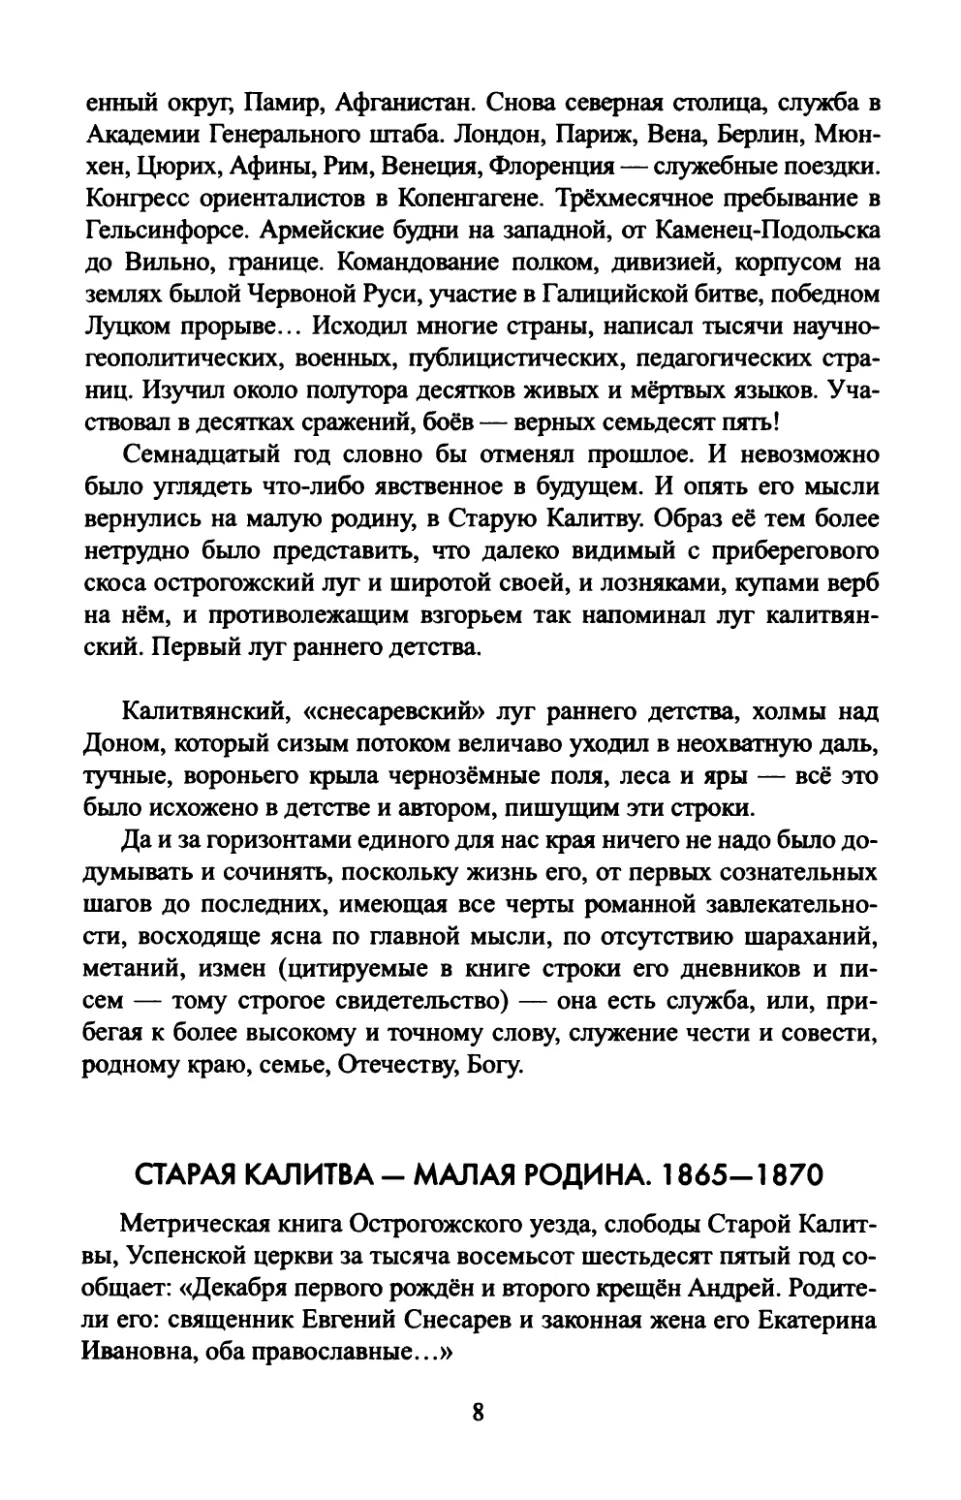 СТАРАЯ  КАЛИТВА  —  МАЛАЯ  РОДИНА. 1865—1870